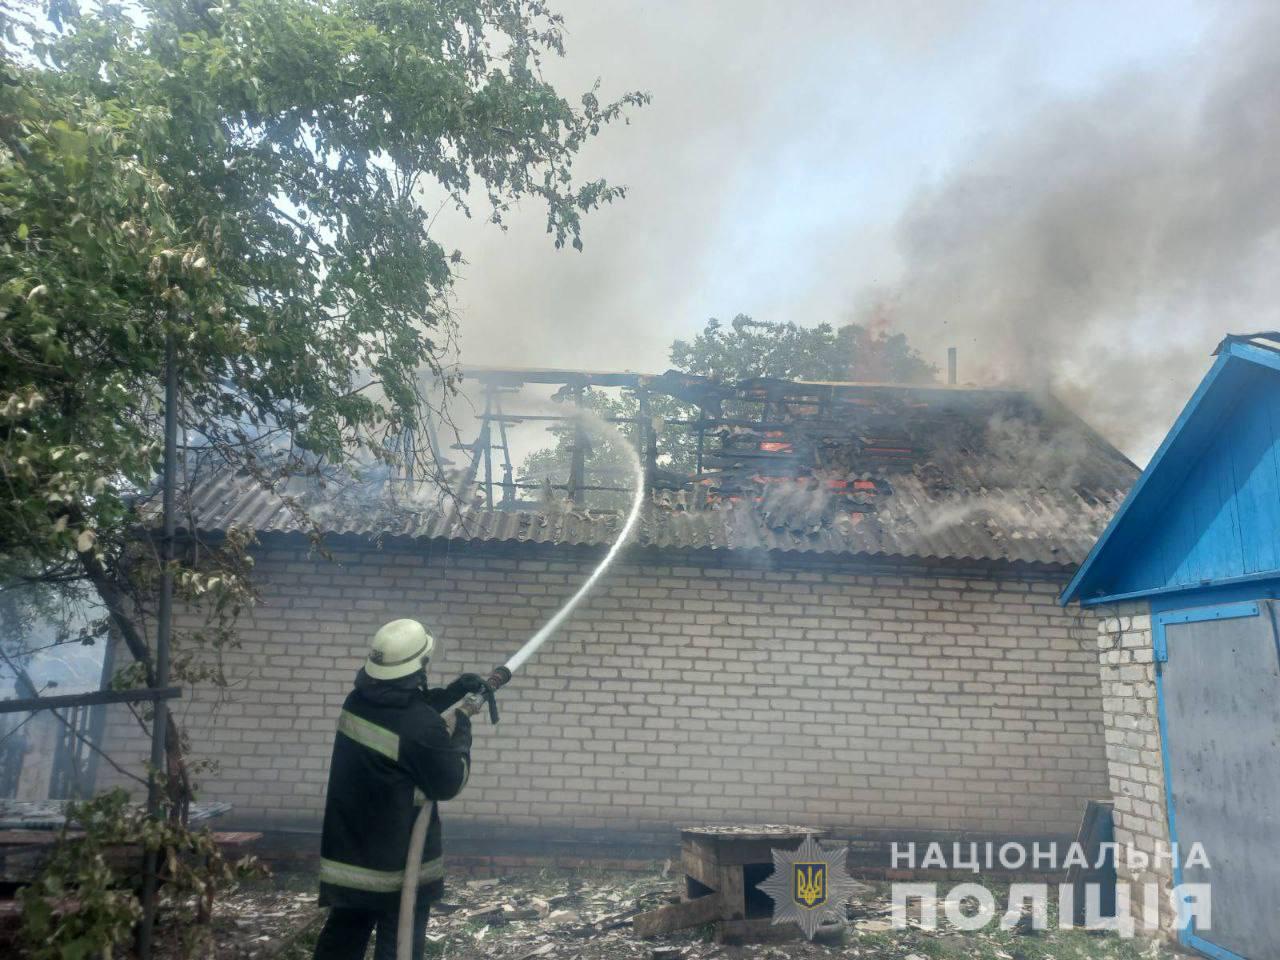 Били из “Ураганов” и танков: 26 мая в Донецкой области оккупанты разрушили 94 мирных объекта. Есть погибшие 6